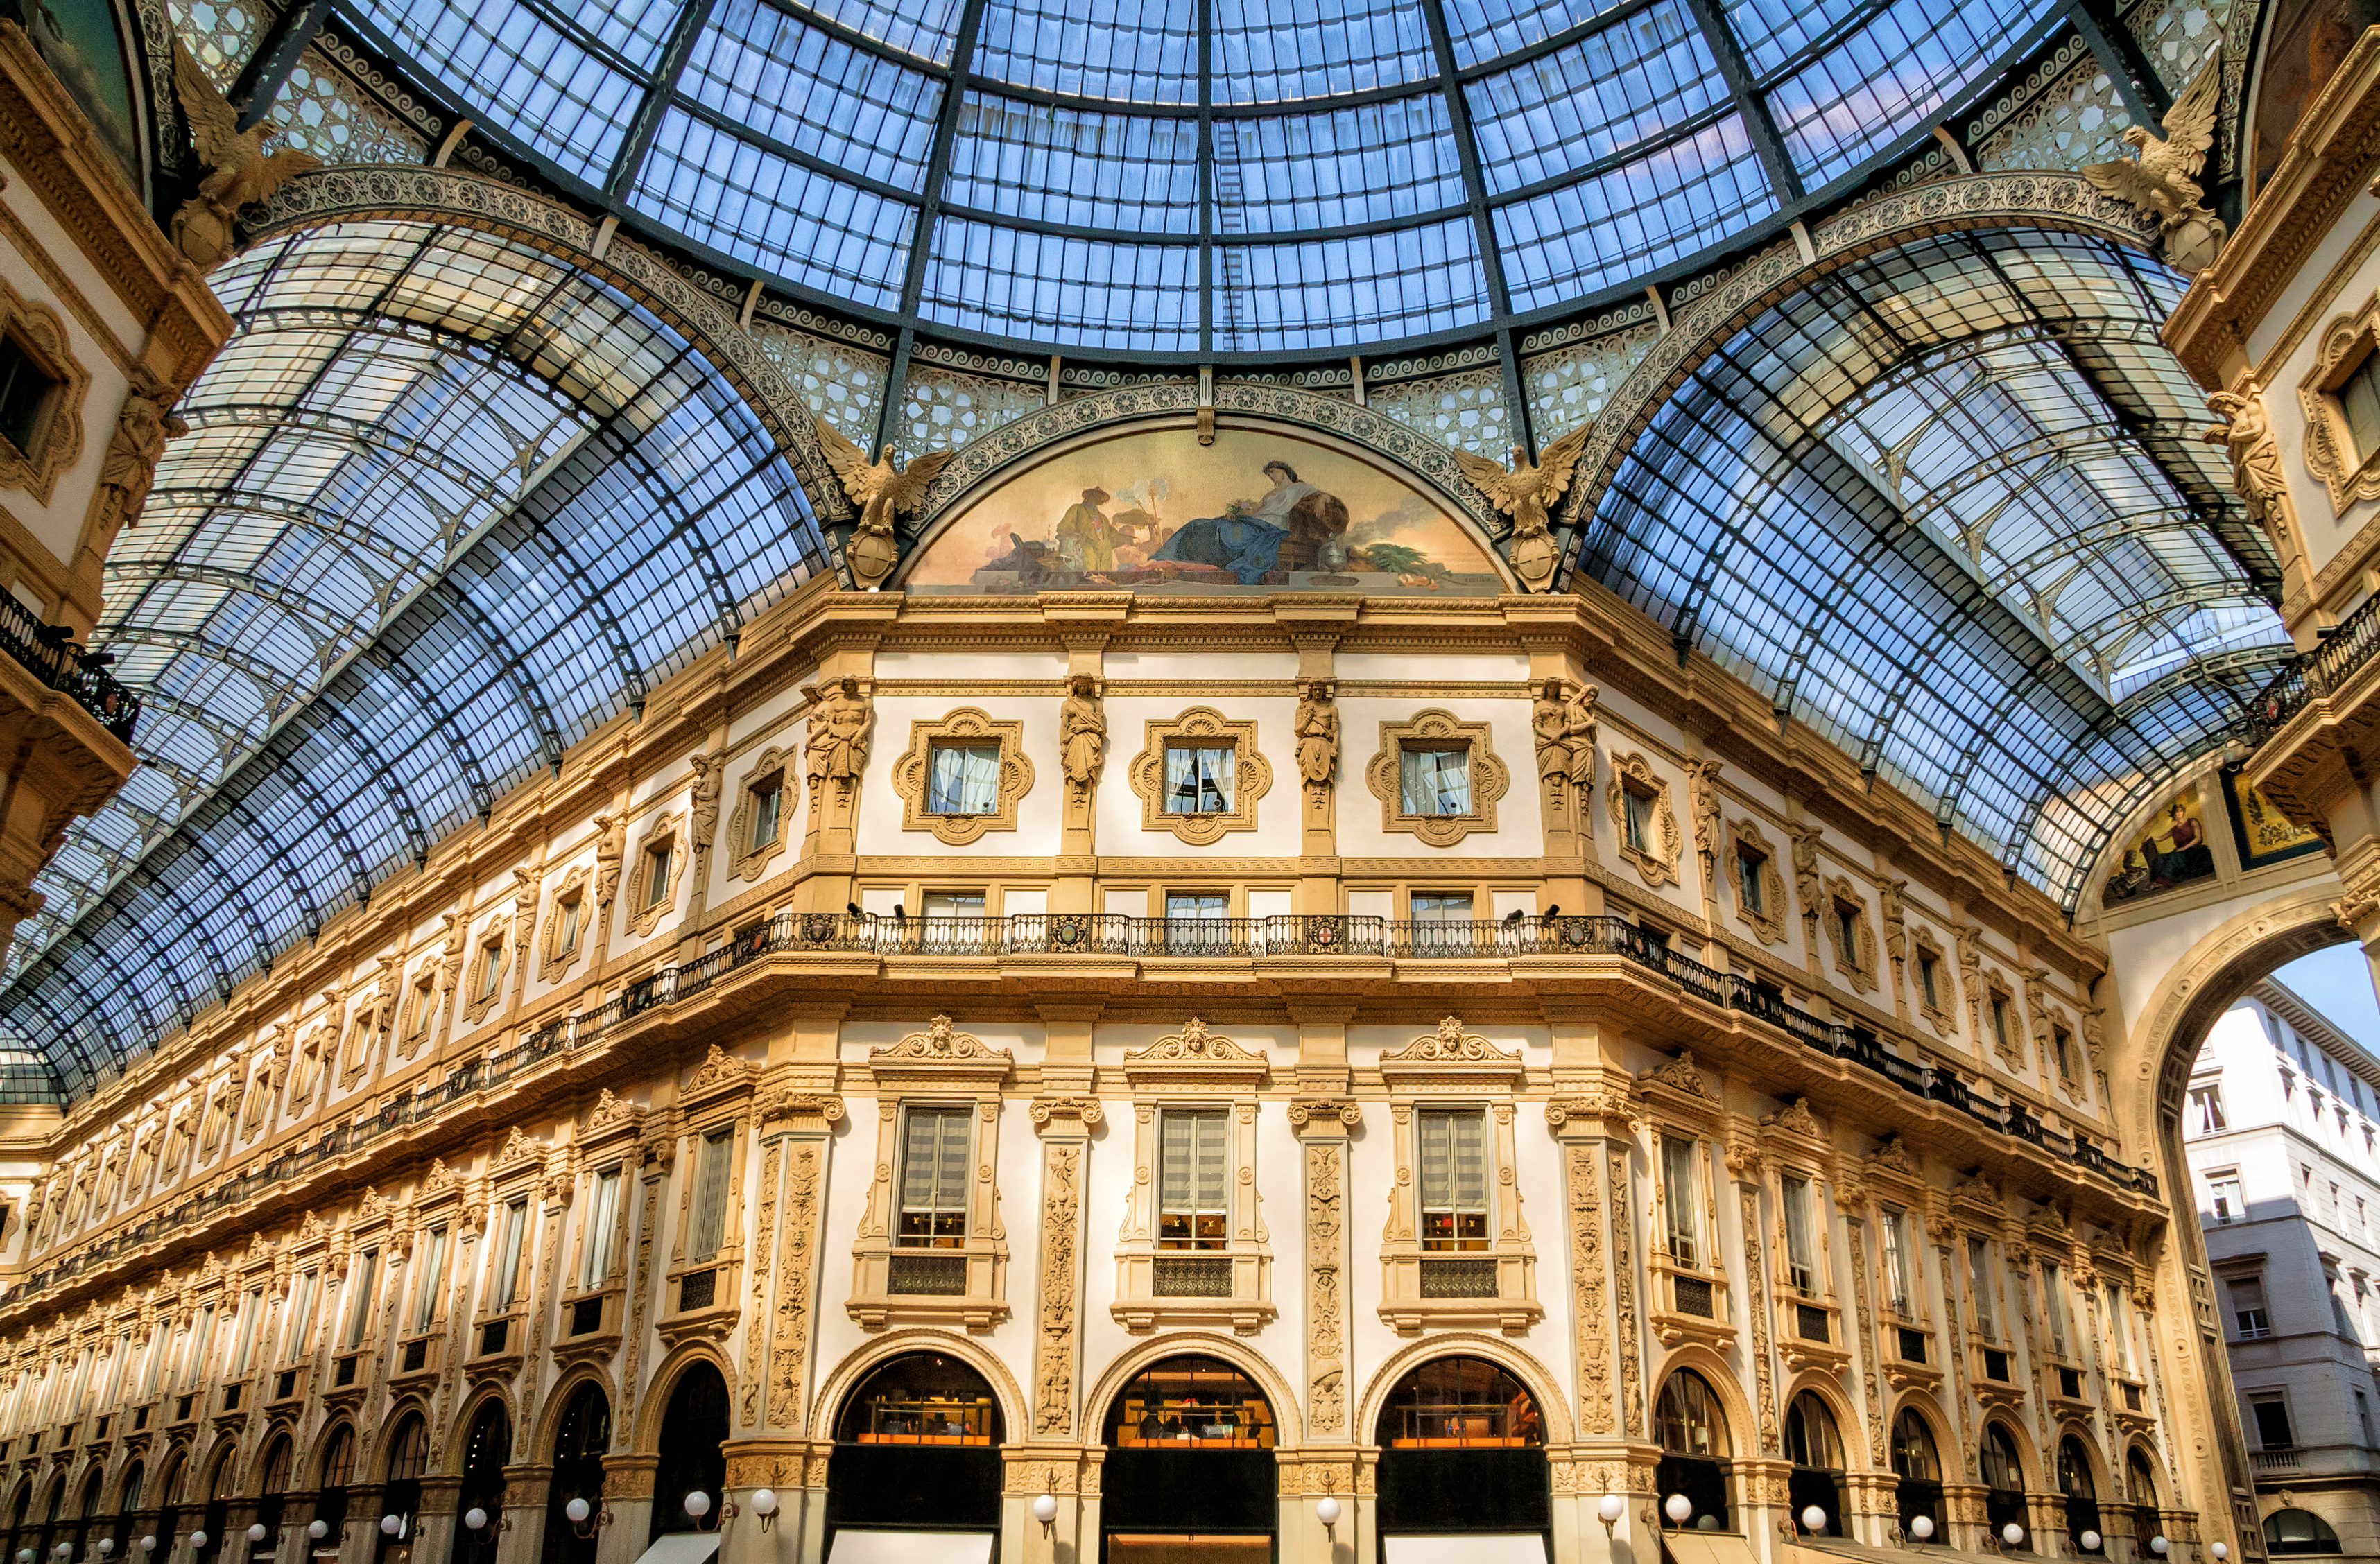 Galería Vittorio Emanuele II: Qué ver en Milán - Italia.it